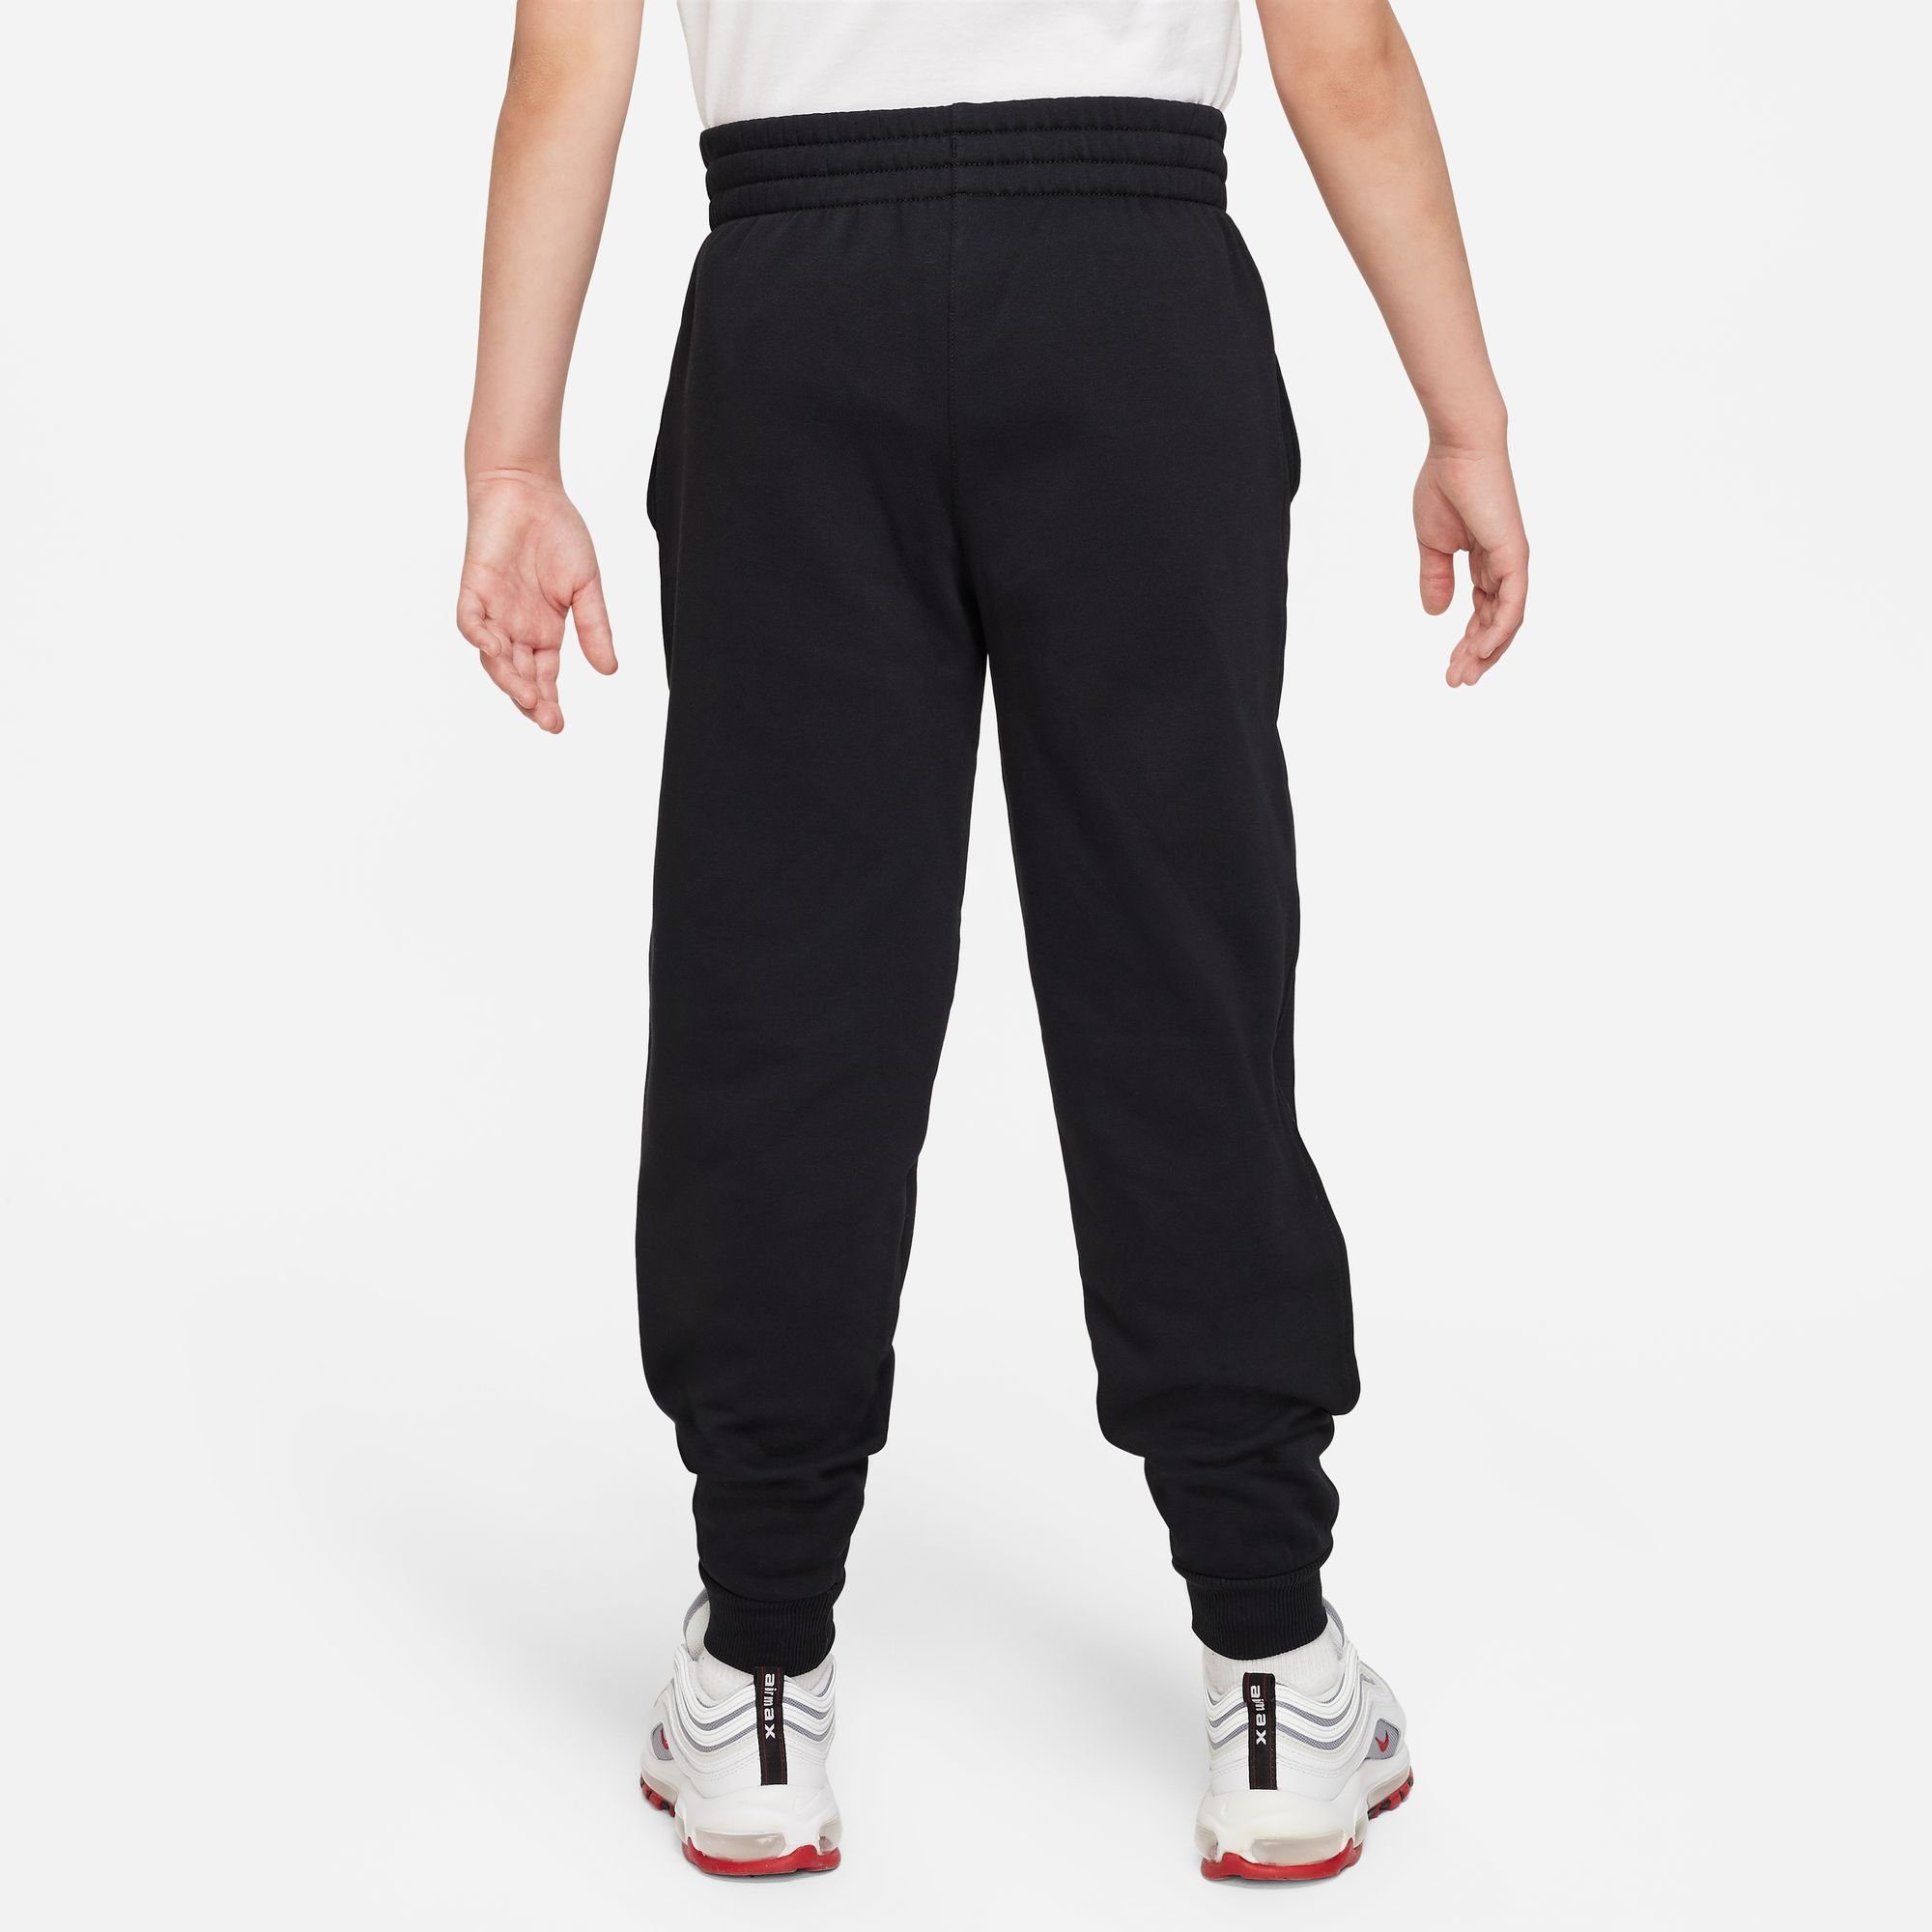 KIDS' Nike Sportswear BIG CLUB FLEECE BLACK/WHITE PANTS JOGGER Jogginghose